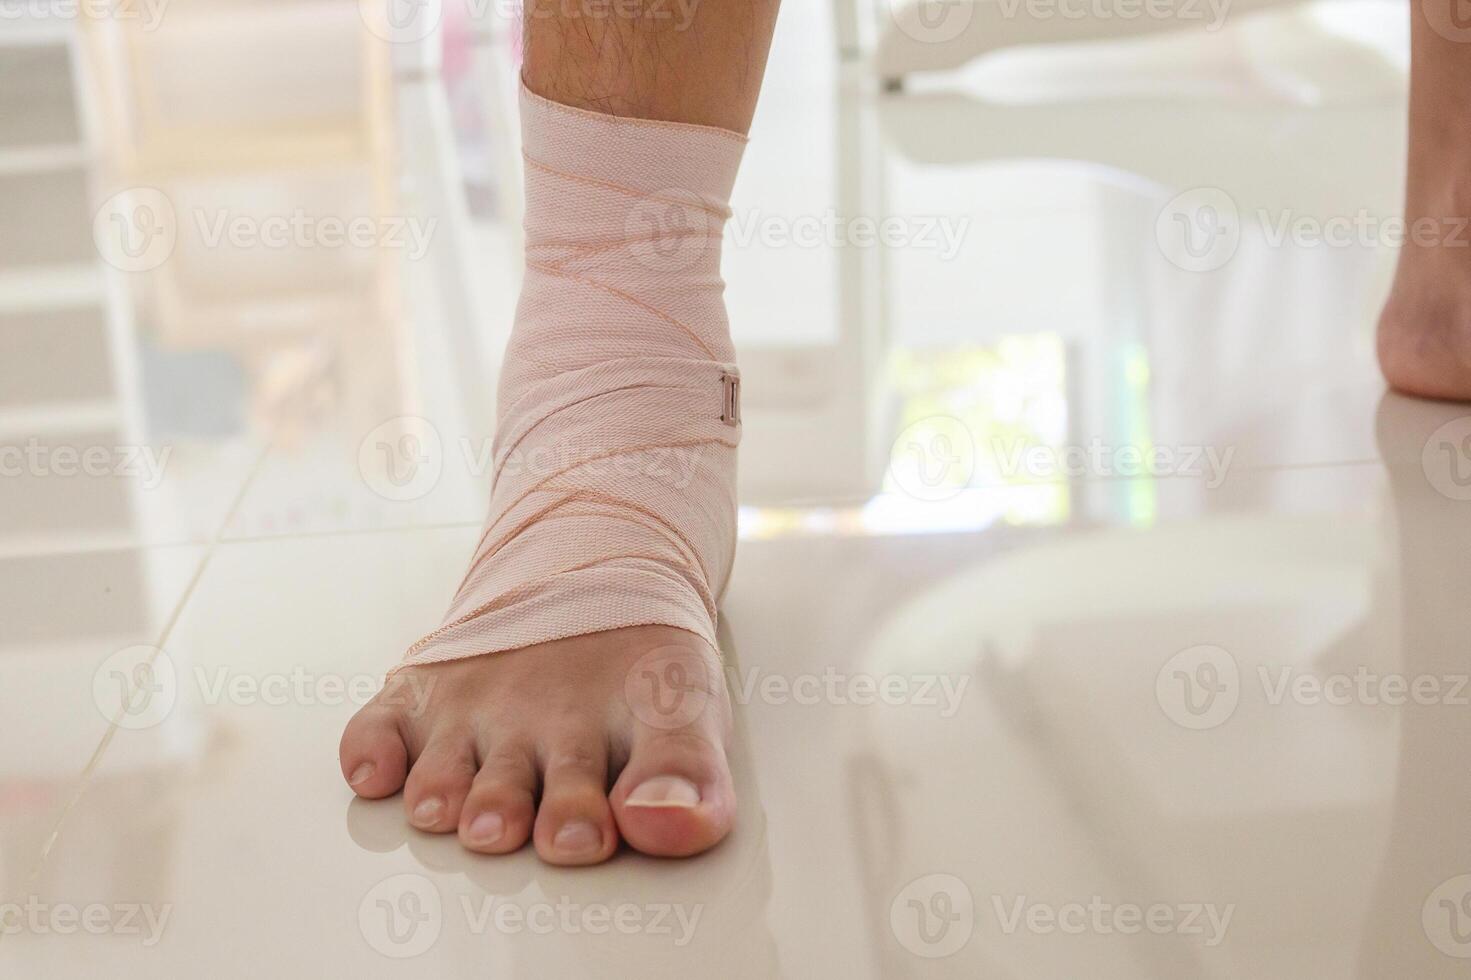 hombre con tobillo esguince elástico vendaje para tobillo lesión y sensación dolor foto